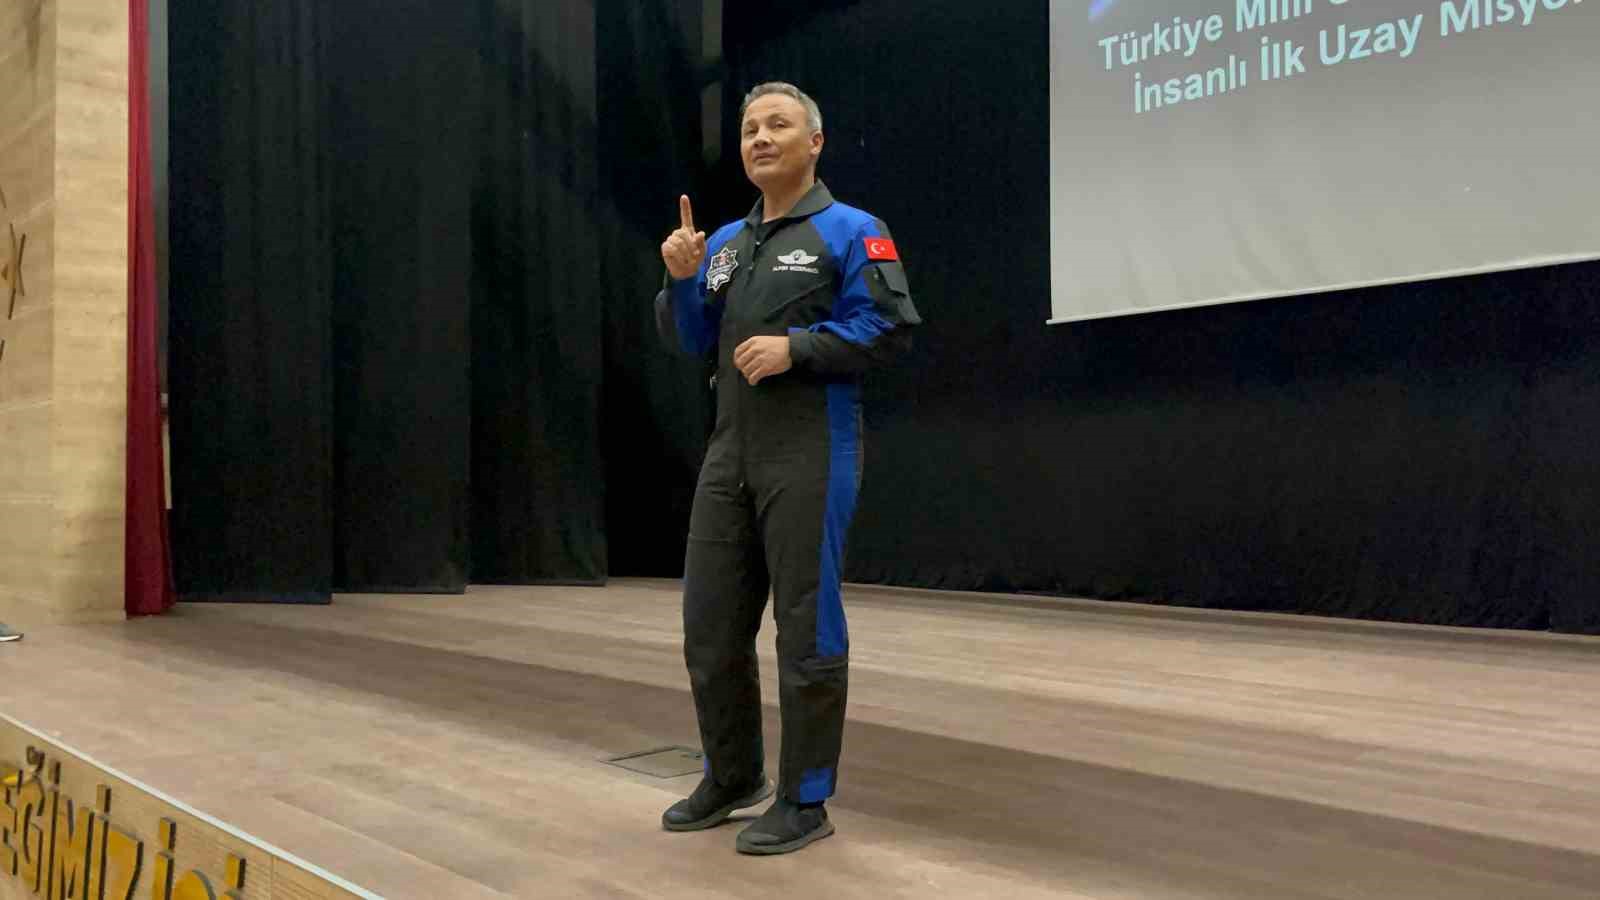 İlk Türk astronotu Alper Gezeravcı Eskişehir’de öğrencilerle buluştu